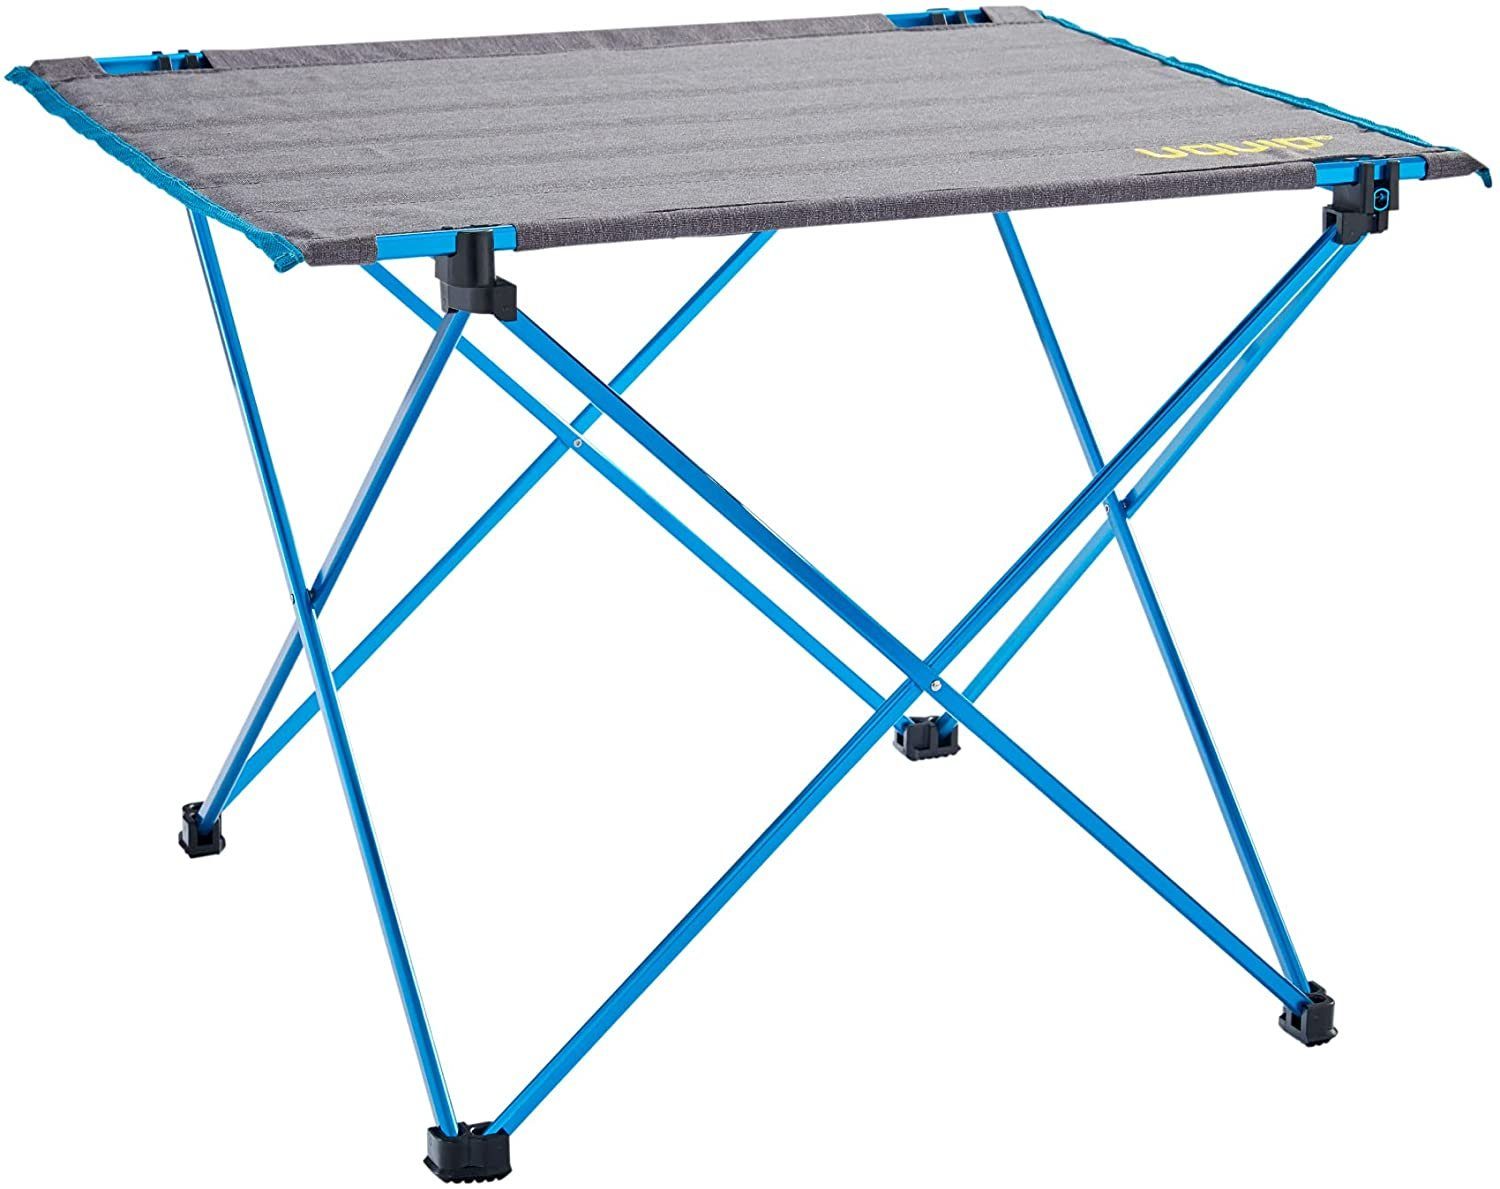 UQUIP Campingtisch Falttisch Liberty, Leichtgewichttisch bis 30 kg belastbar, Grau, Tischplatte aus reißfestem Polyester